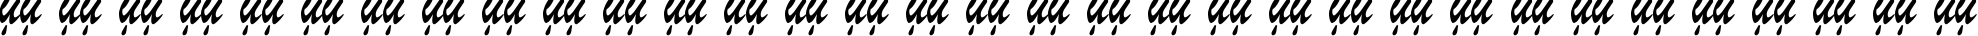 Пример написания русского алфавита шрифтом Parsek Condensed